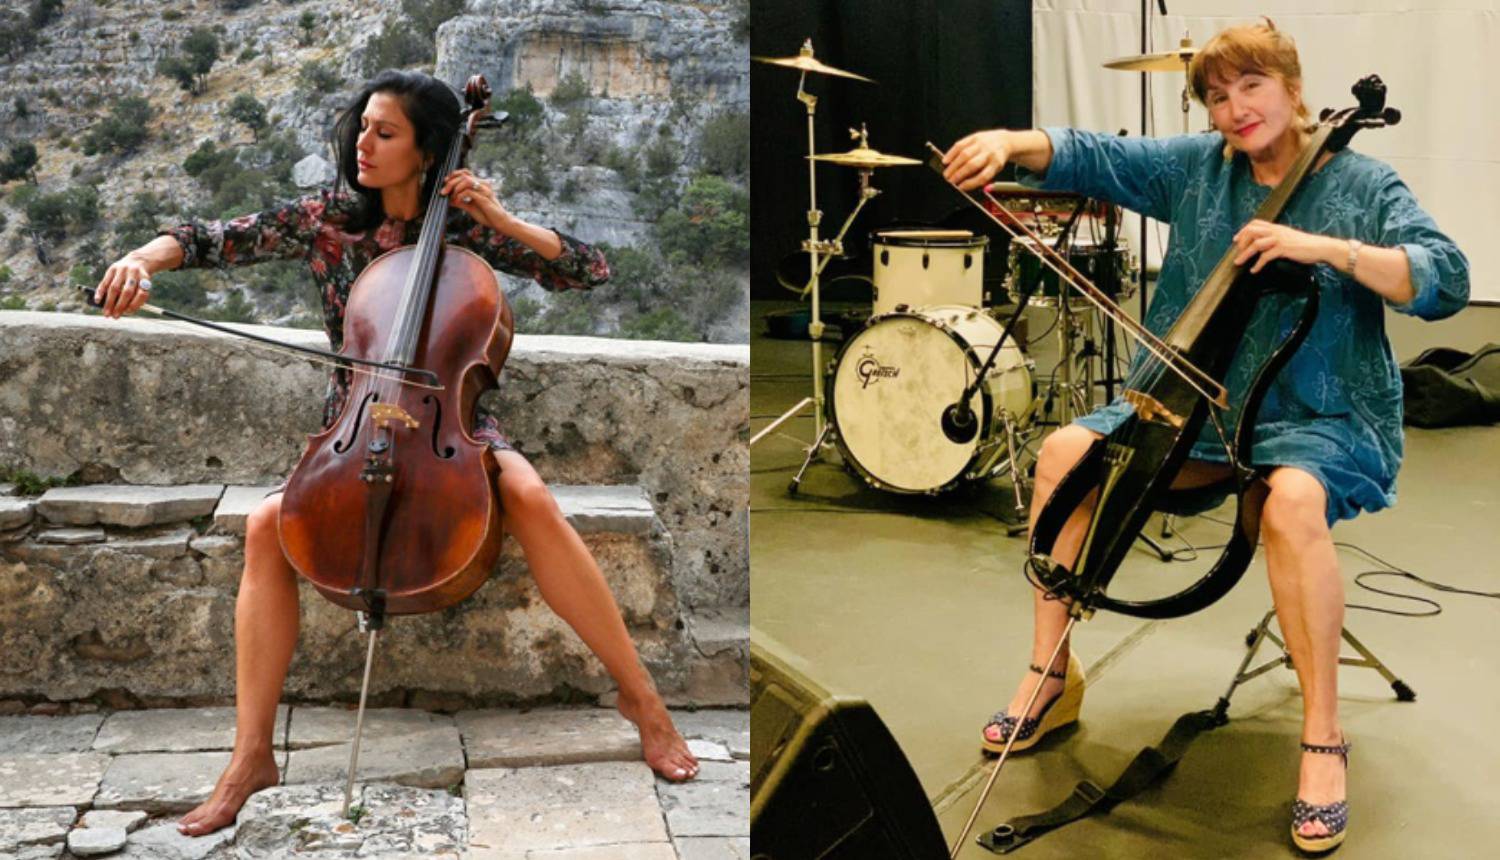 Ana Rucner objavila fotografiju mame u haljini s violončelom: 'Sad znamo na koga si ljepotica'